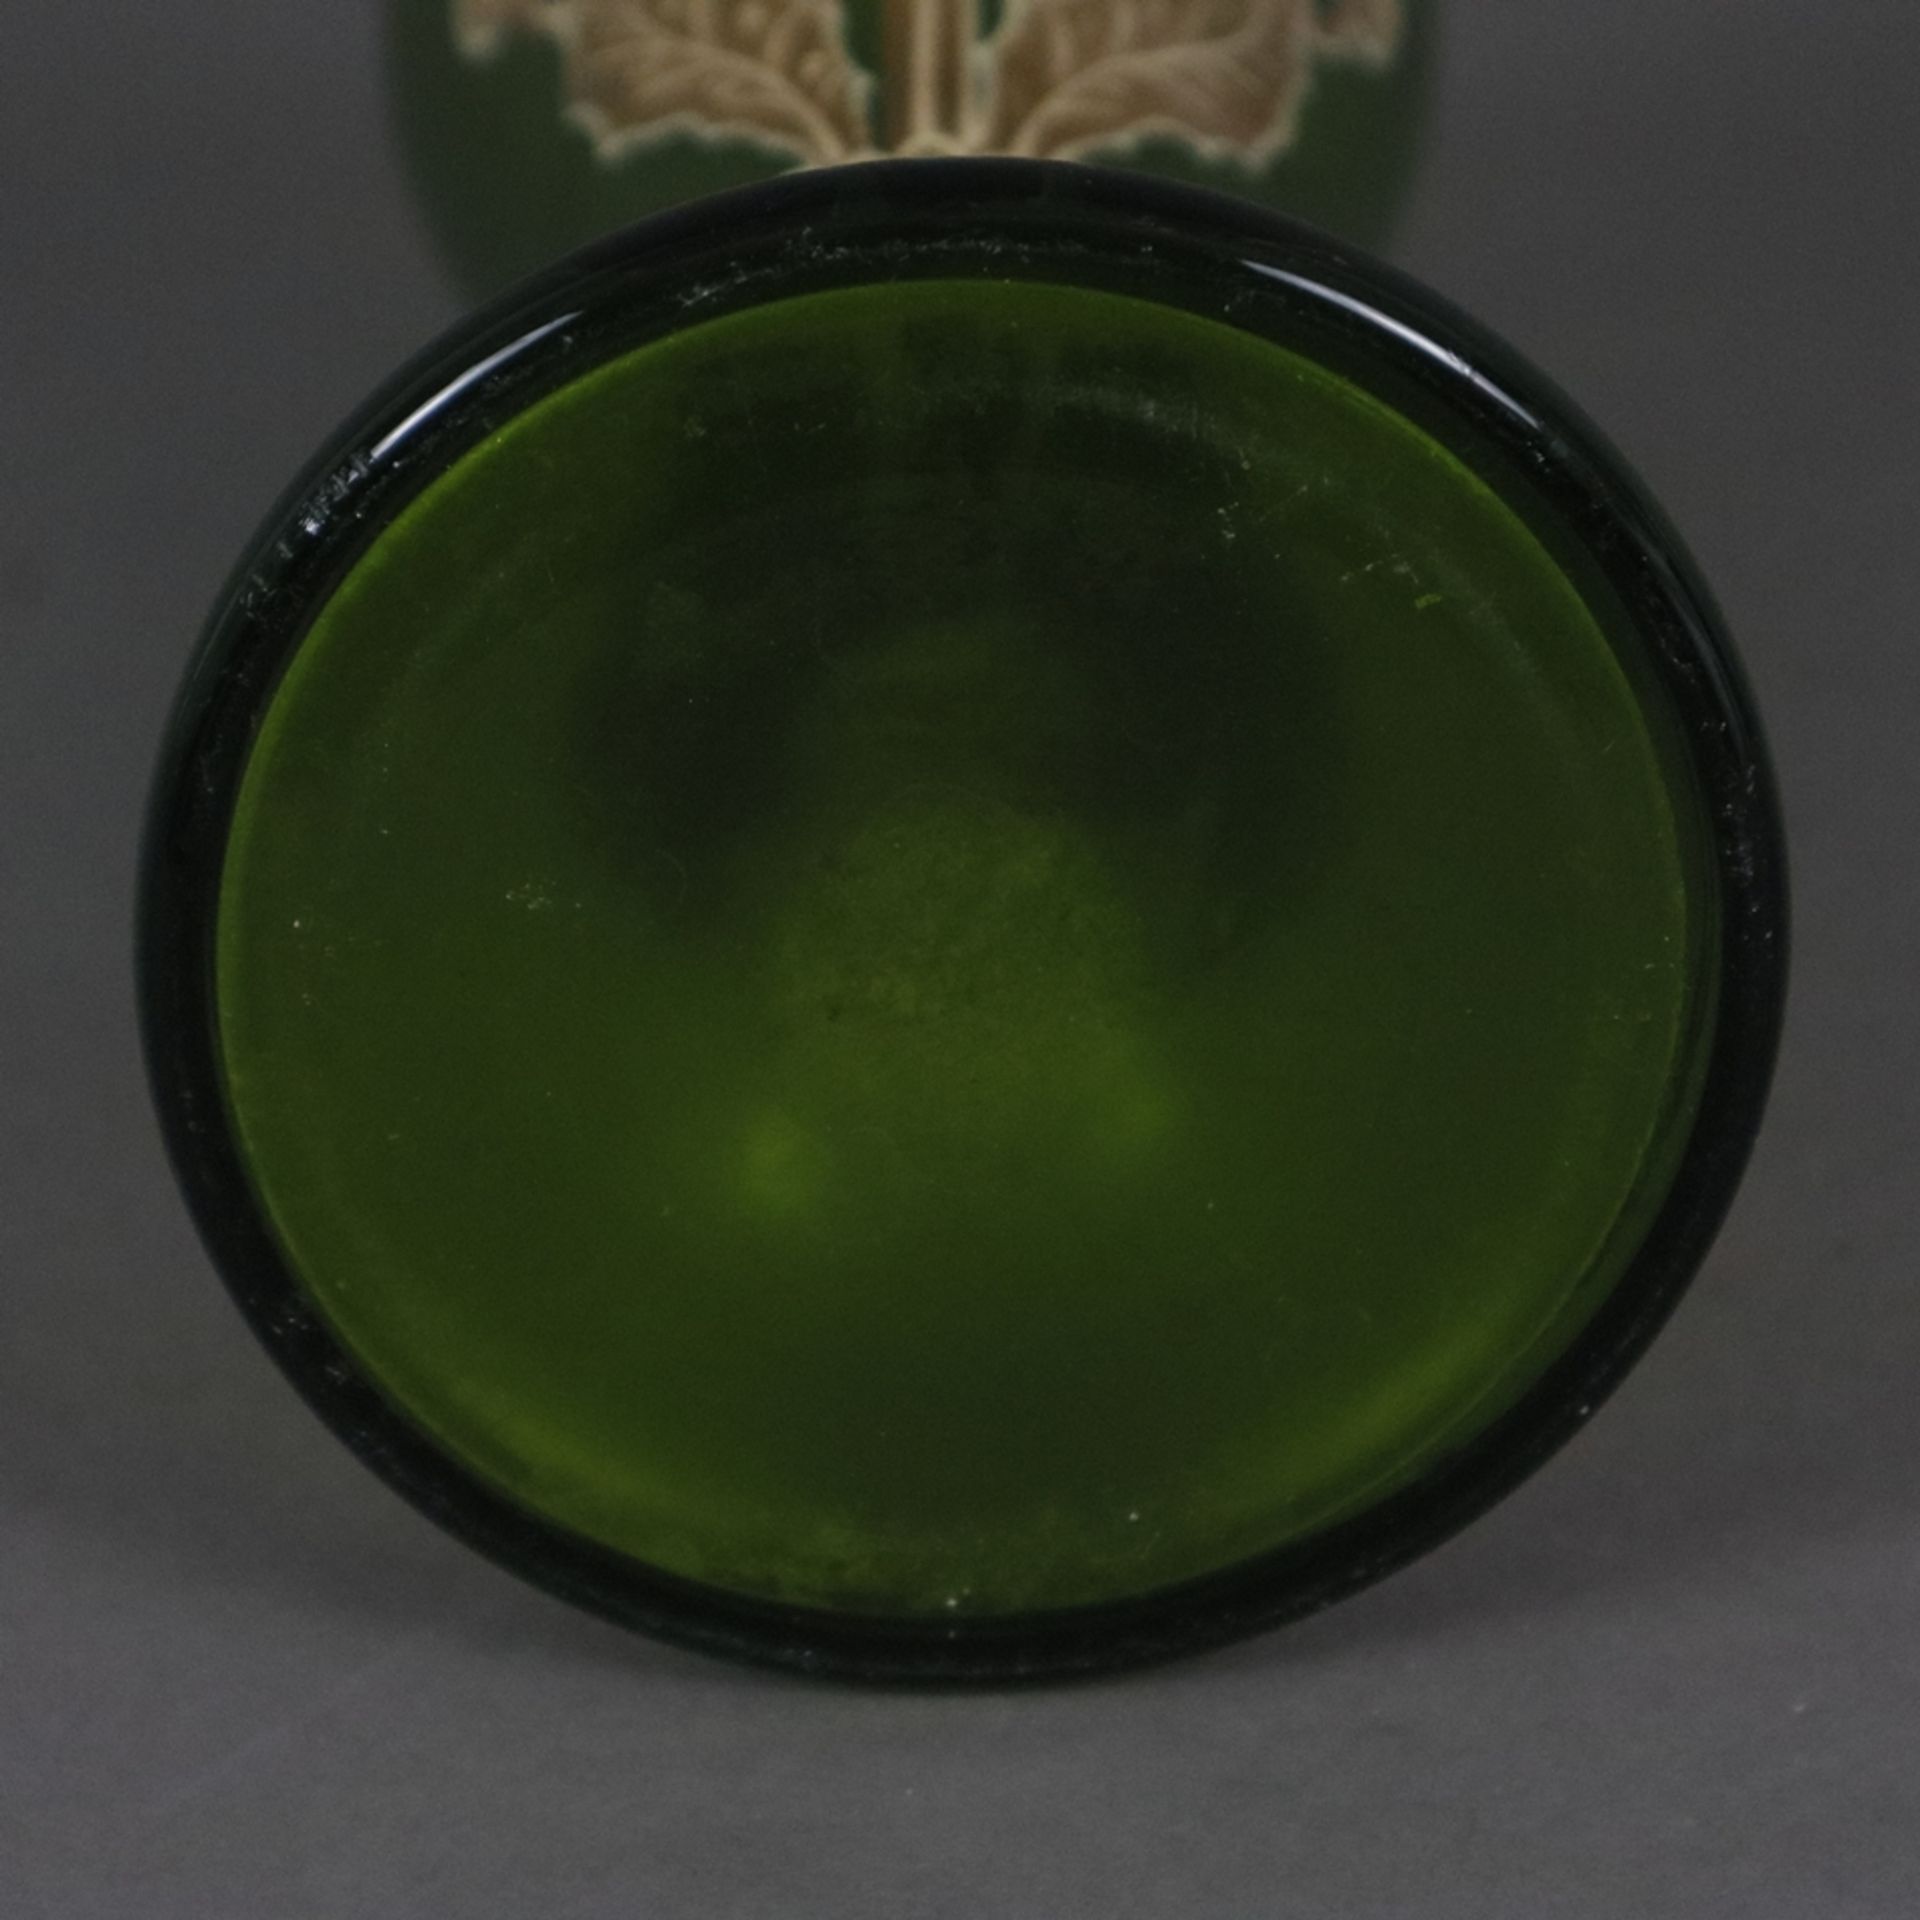 Jugendstil-Glasvase mit Metallmontur - wohl Frankreich um 1900, Klarglas mit grünem Unterfang, scha - Bild 8 aus 8